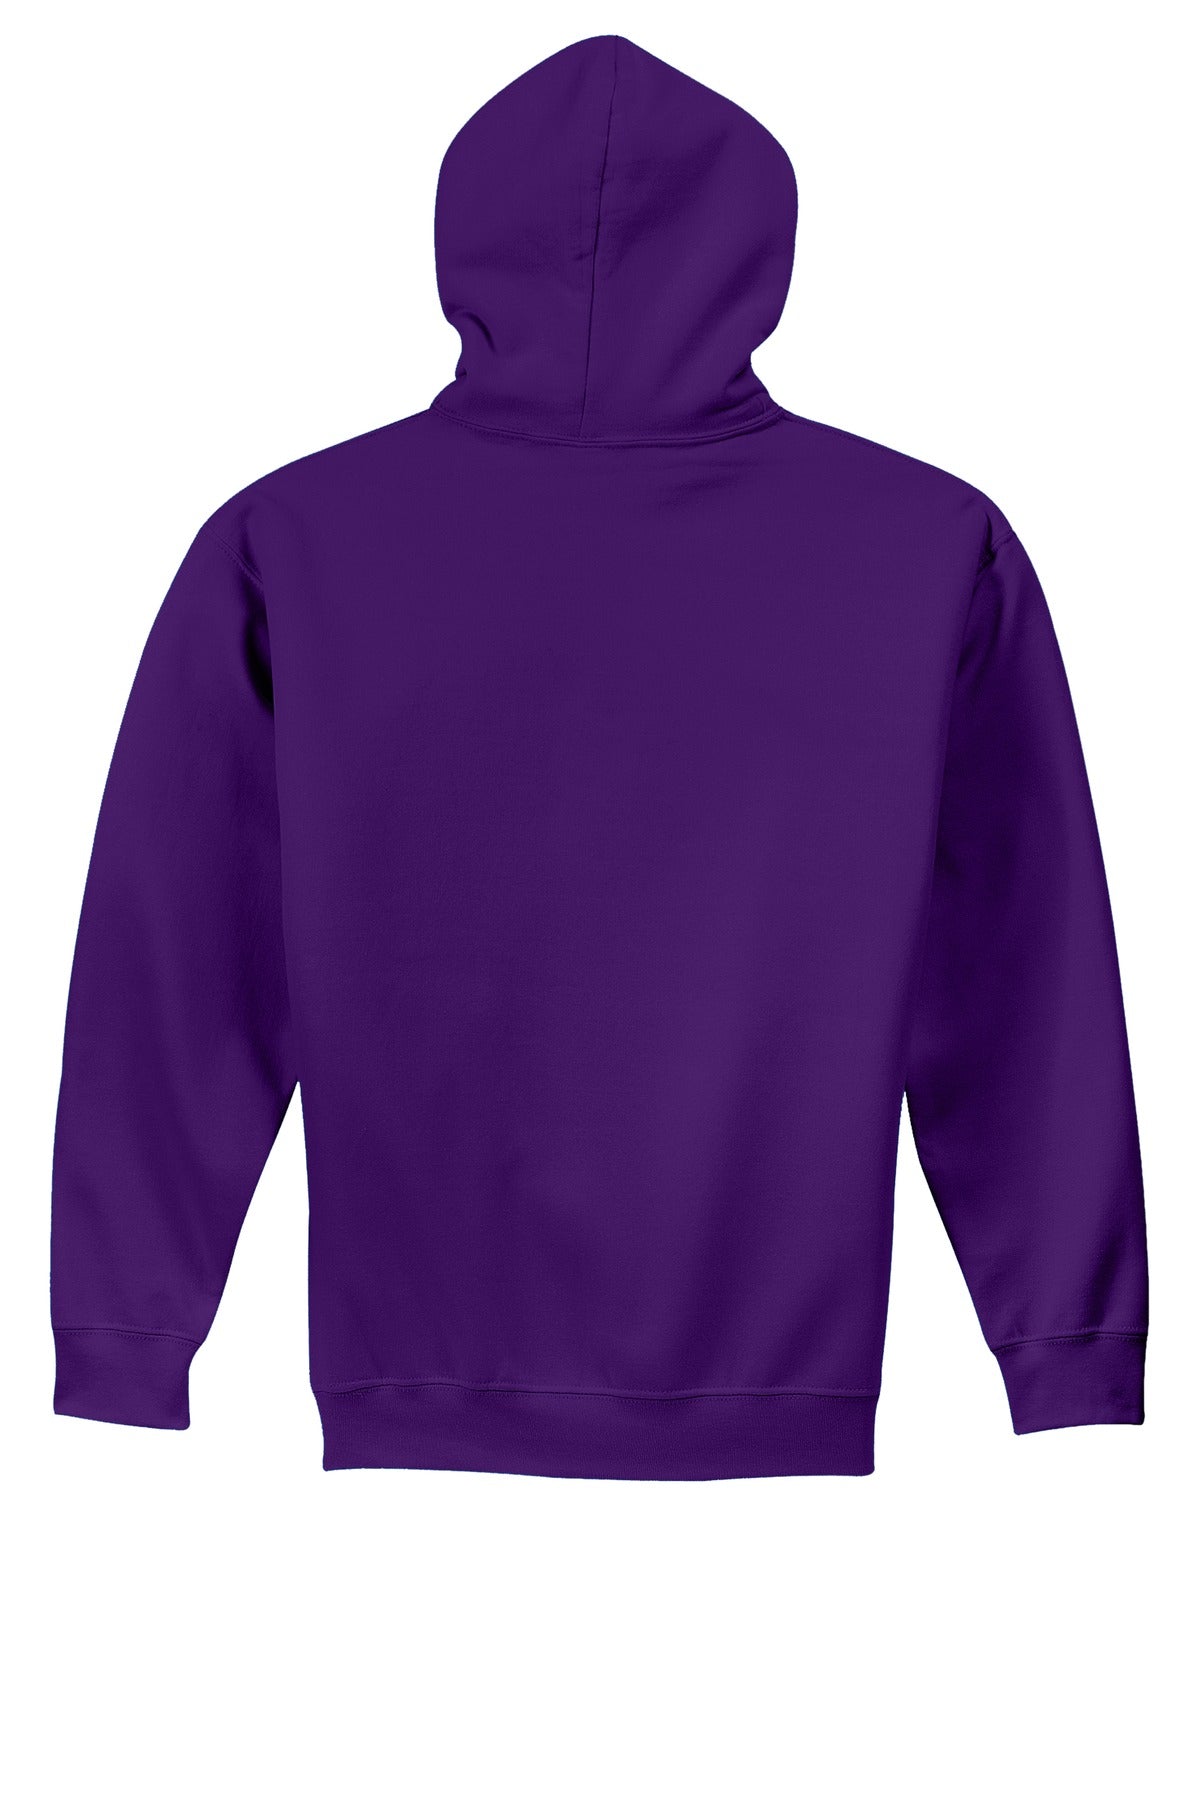 Gildan® - Youth Heavy Blend™ Hooded Sweatshirt. 18500B [Purple] - DFW Impression